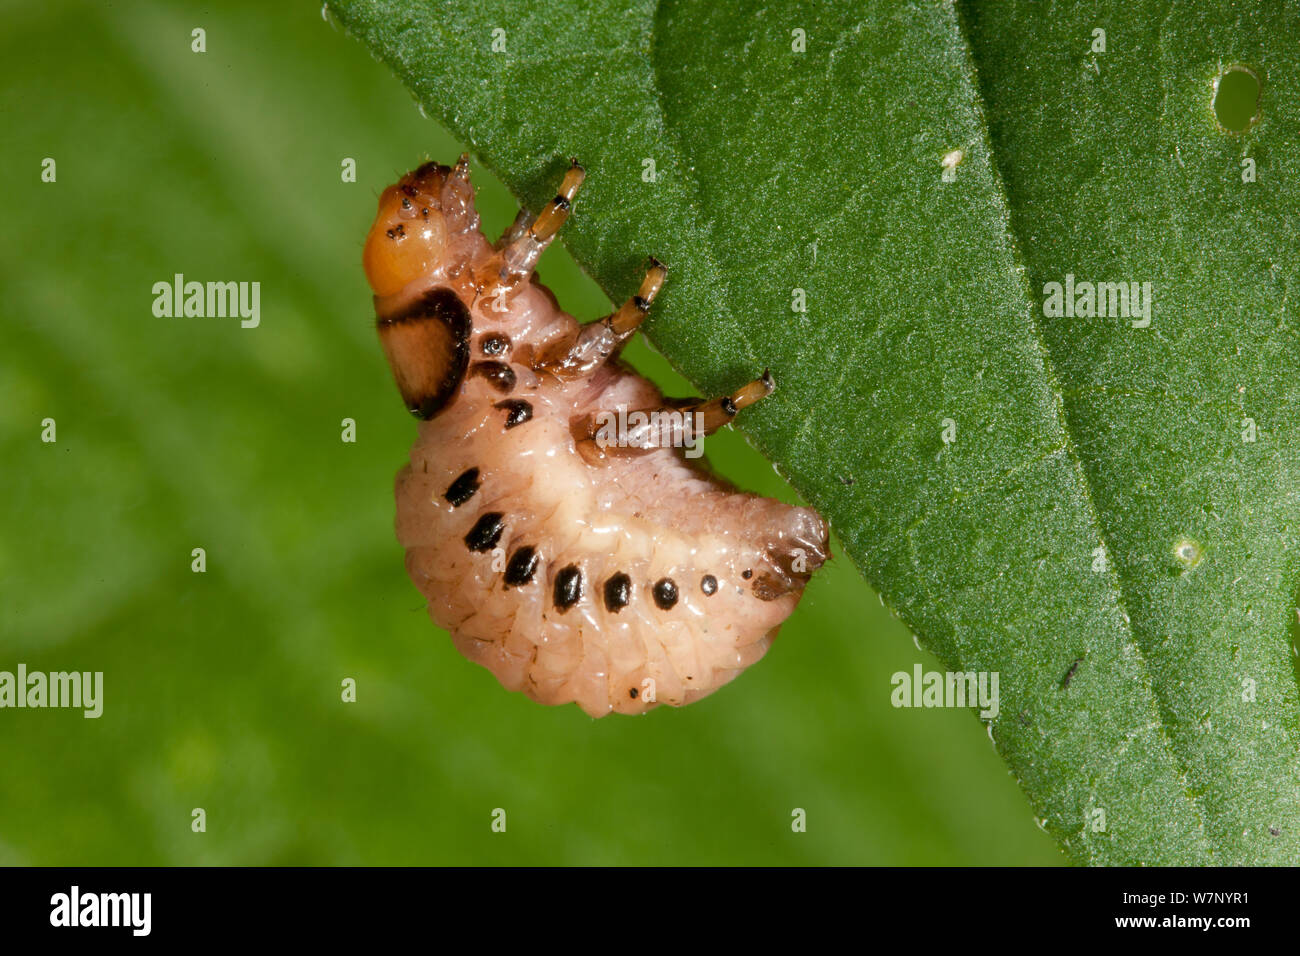 Faux La pomme de terre (Leptinotarsa juncta) larve, Pennsylvania, USA, août. Banque D'Images